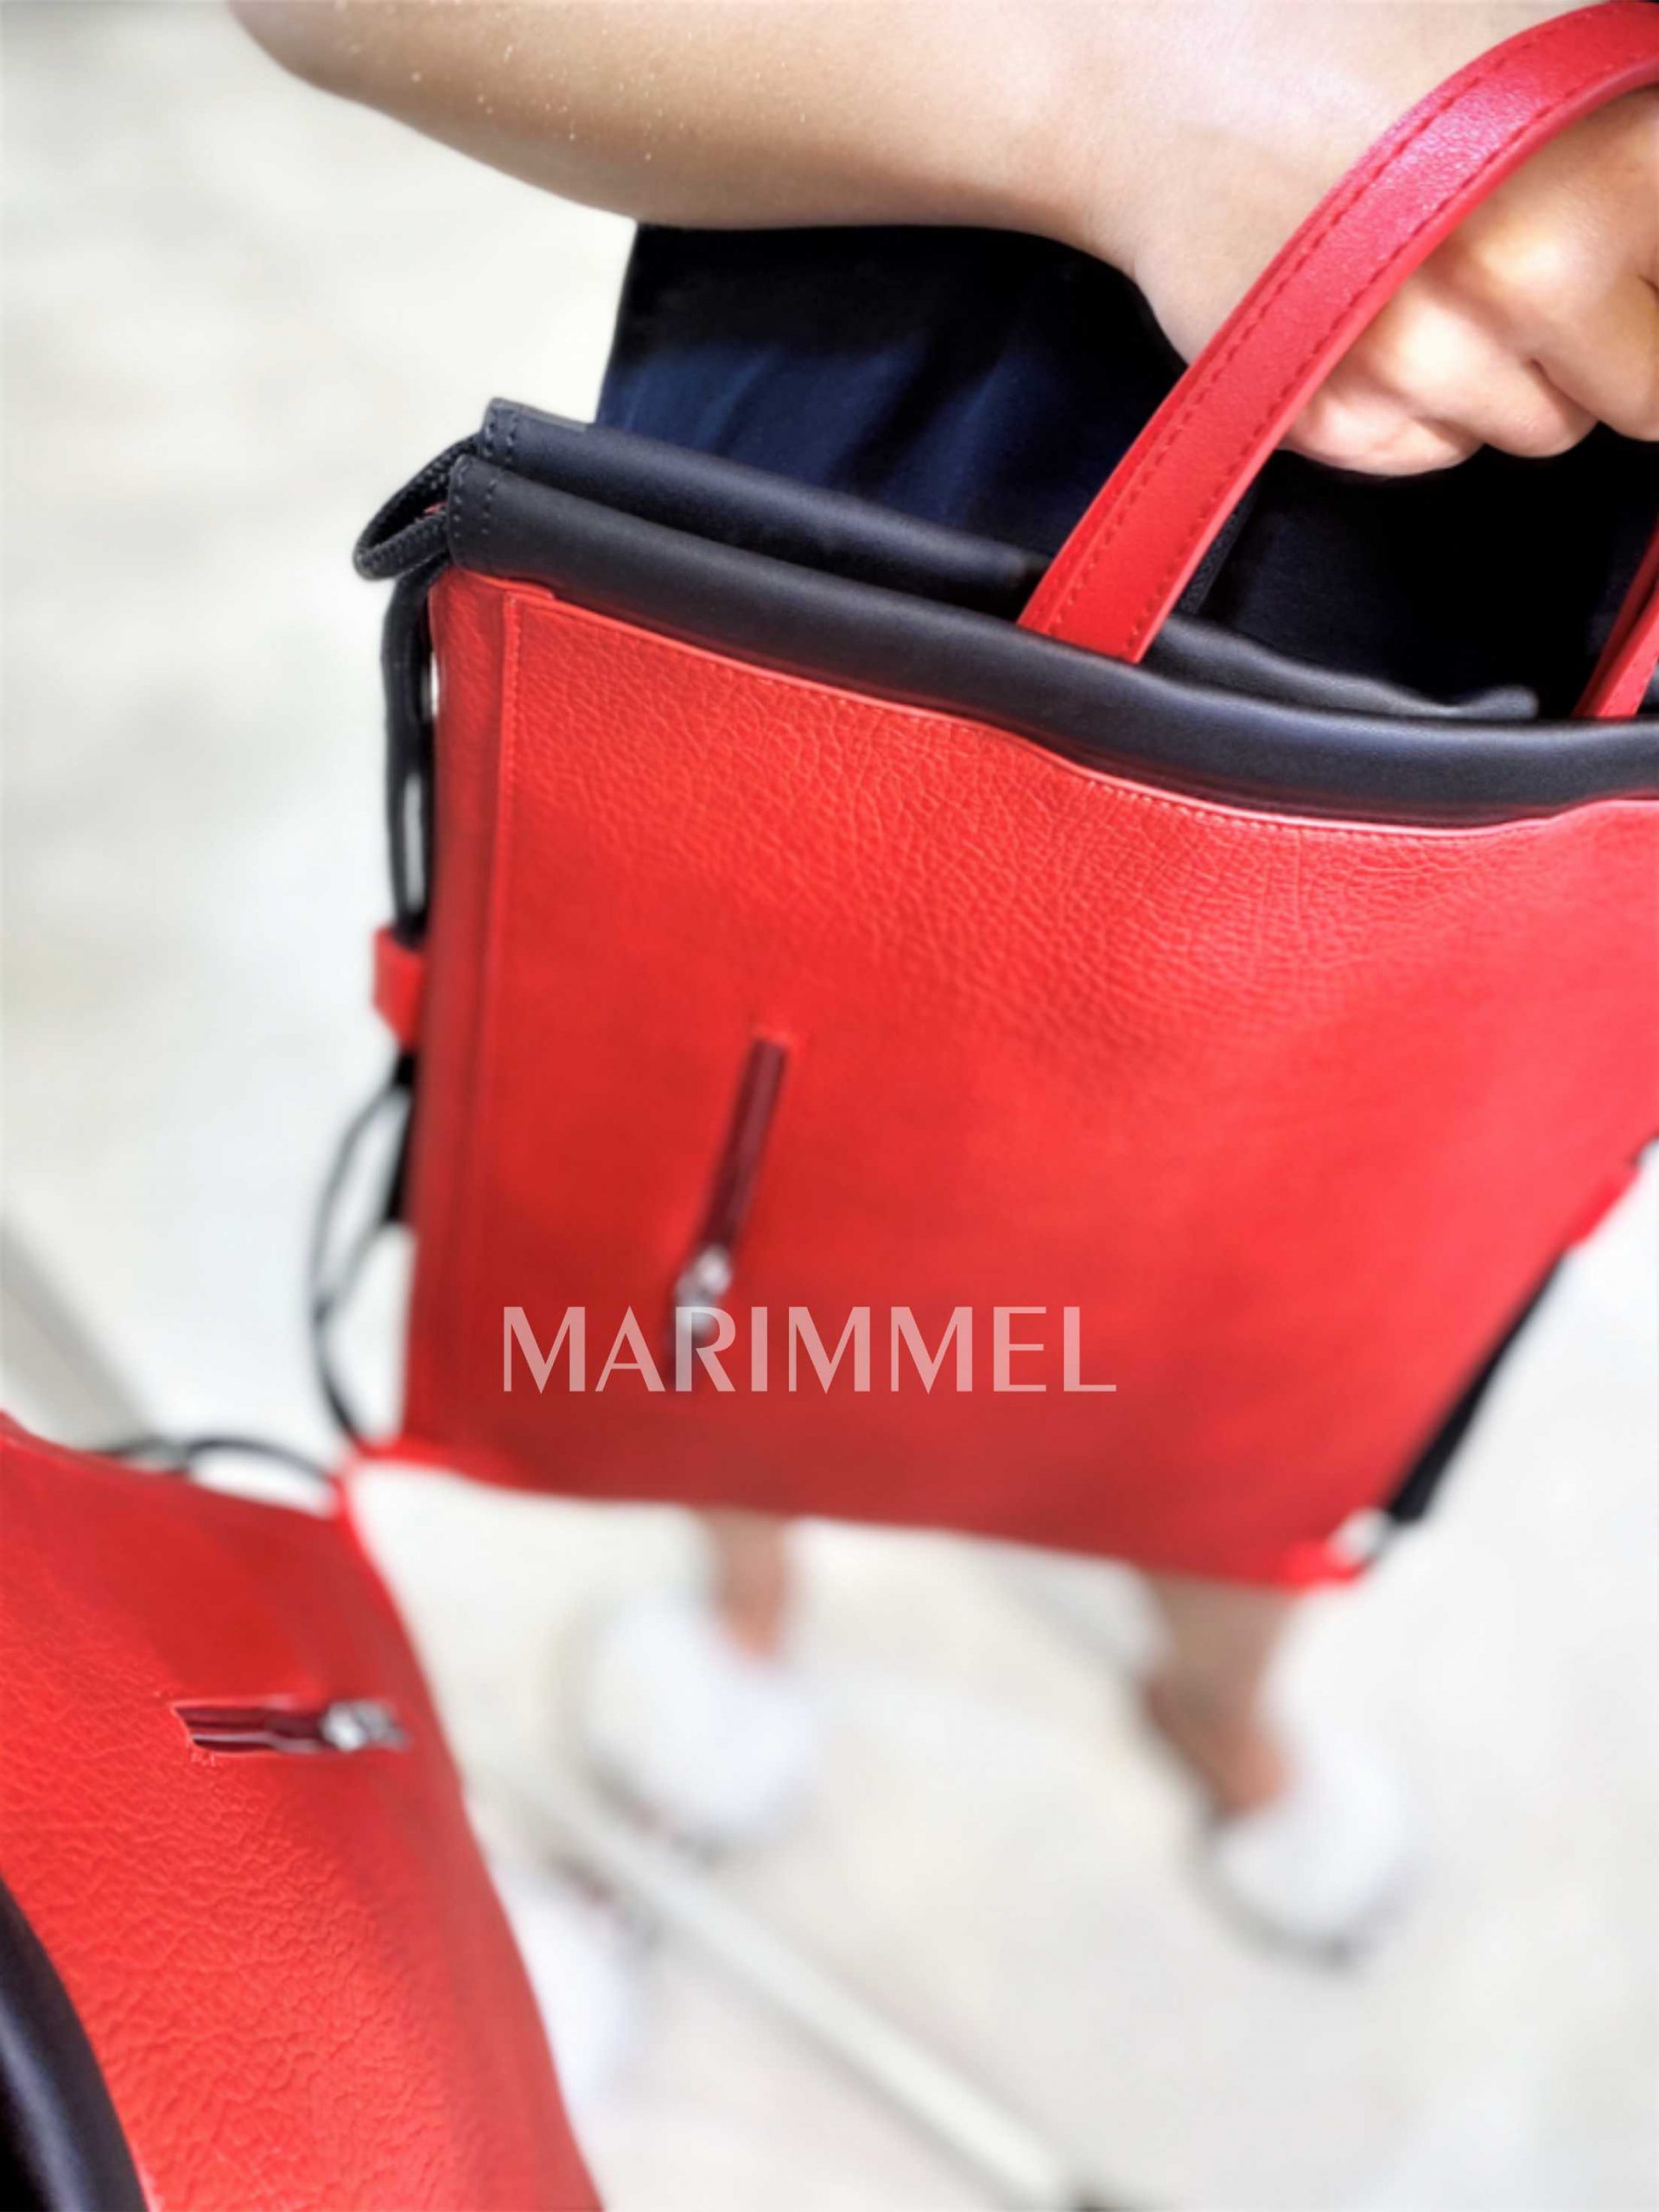 Štýlový ruksak 2v1, ktorý je možné nosiť aj ako kabelku vyrobený z ekokože.